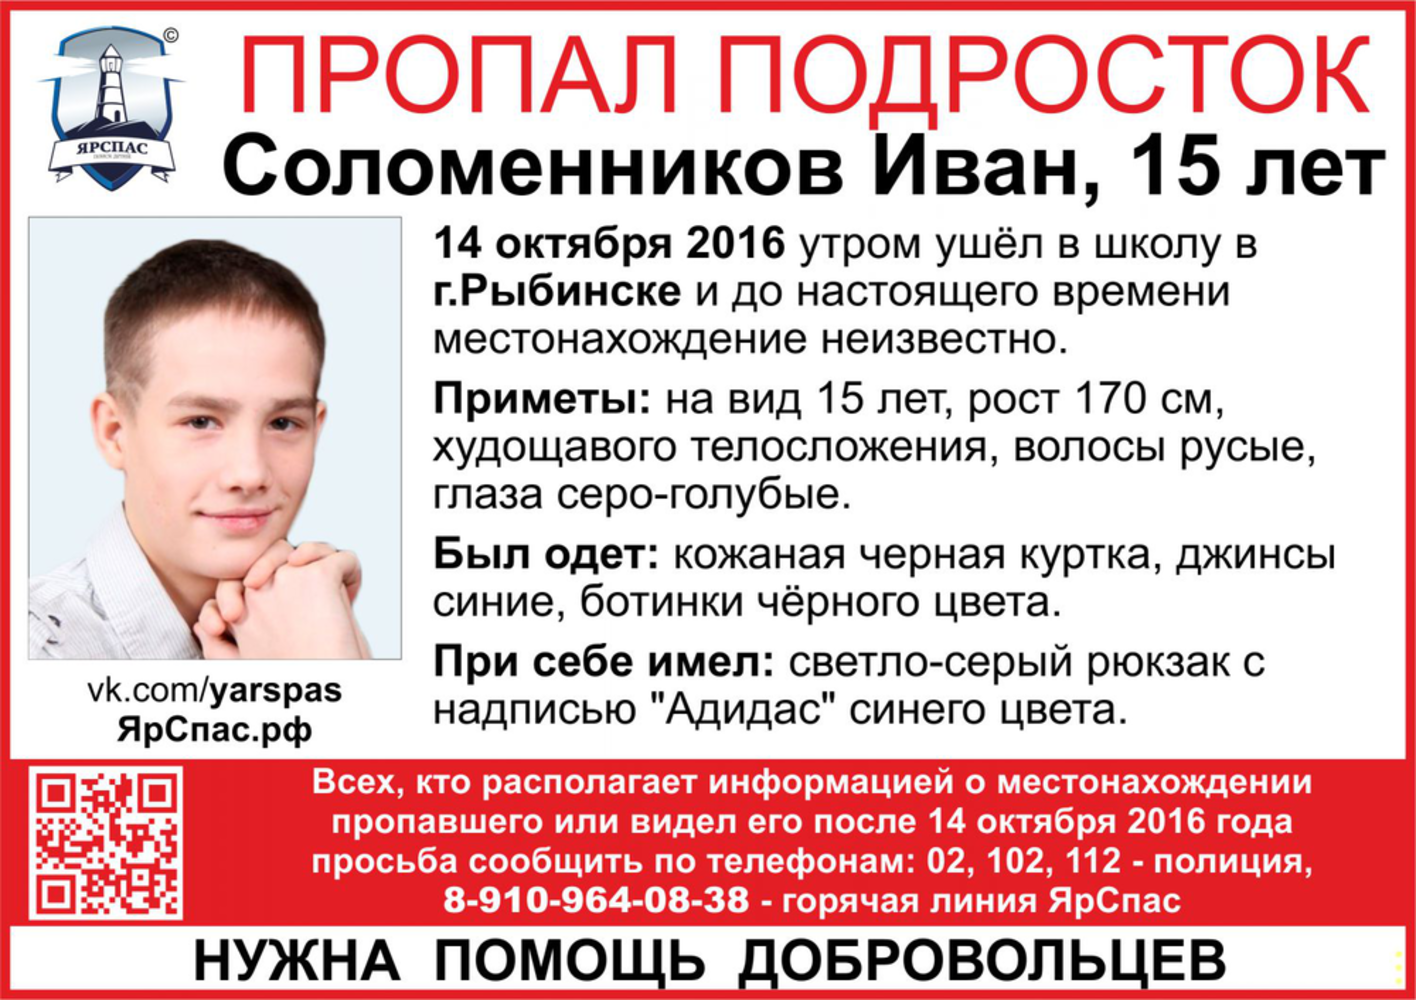 Тема соломенников. ЯРОО ЯРСПАС. Пропавшие подростки в Рыбинске сейчас.